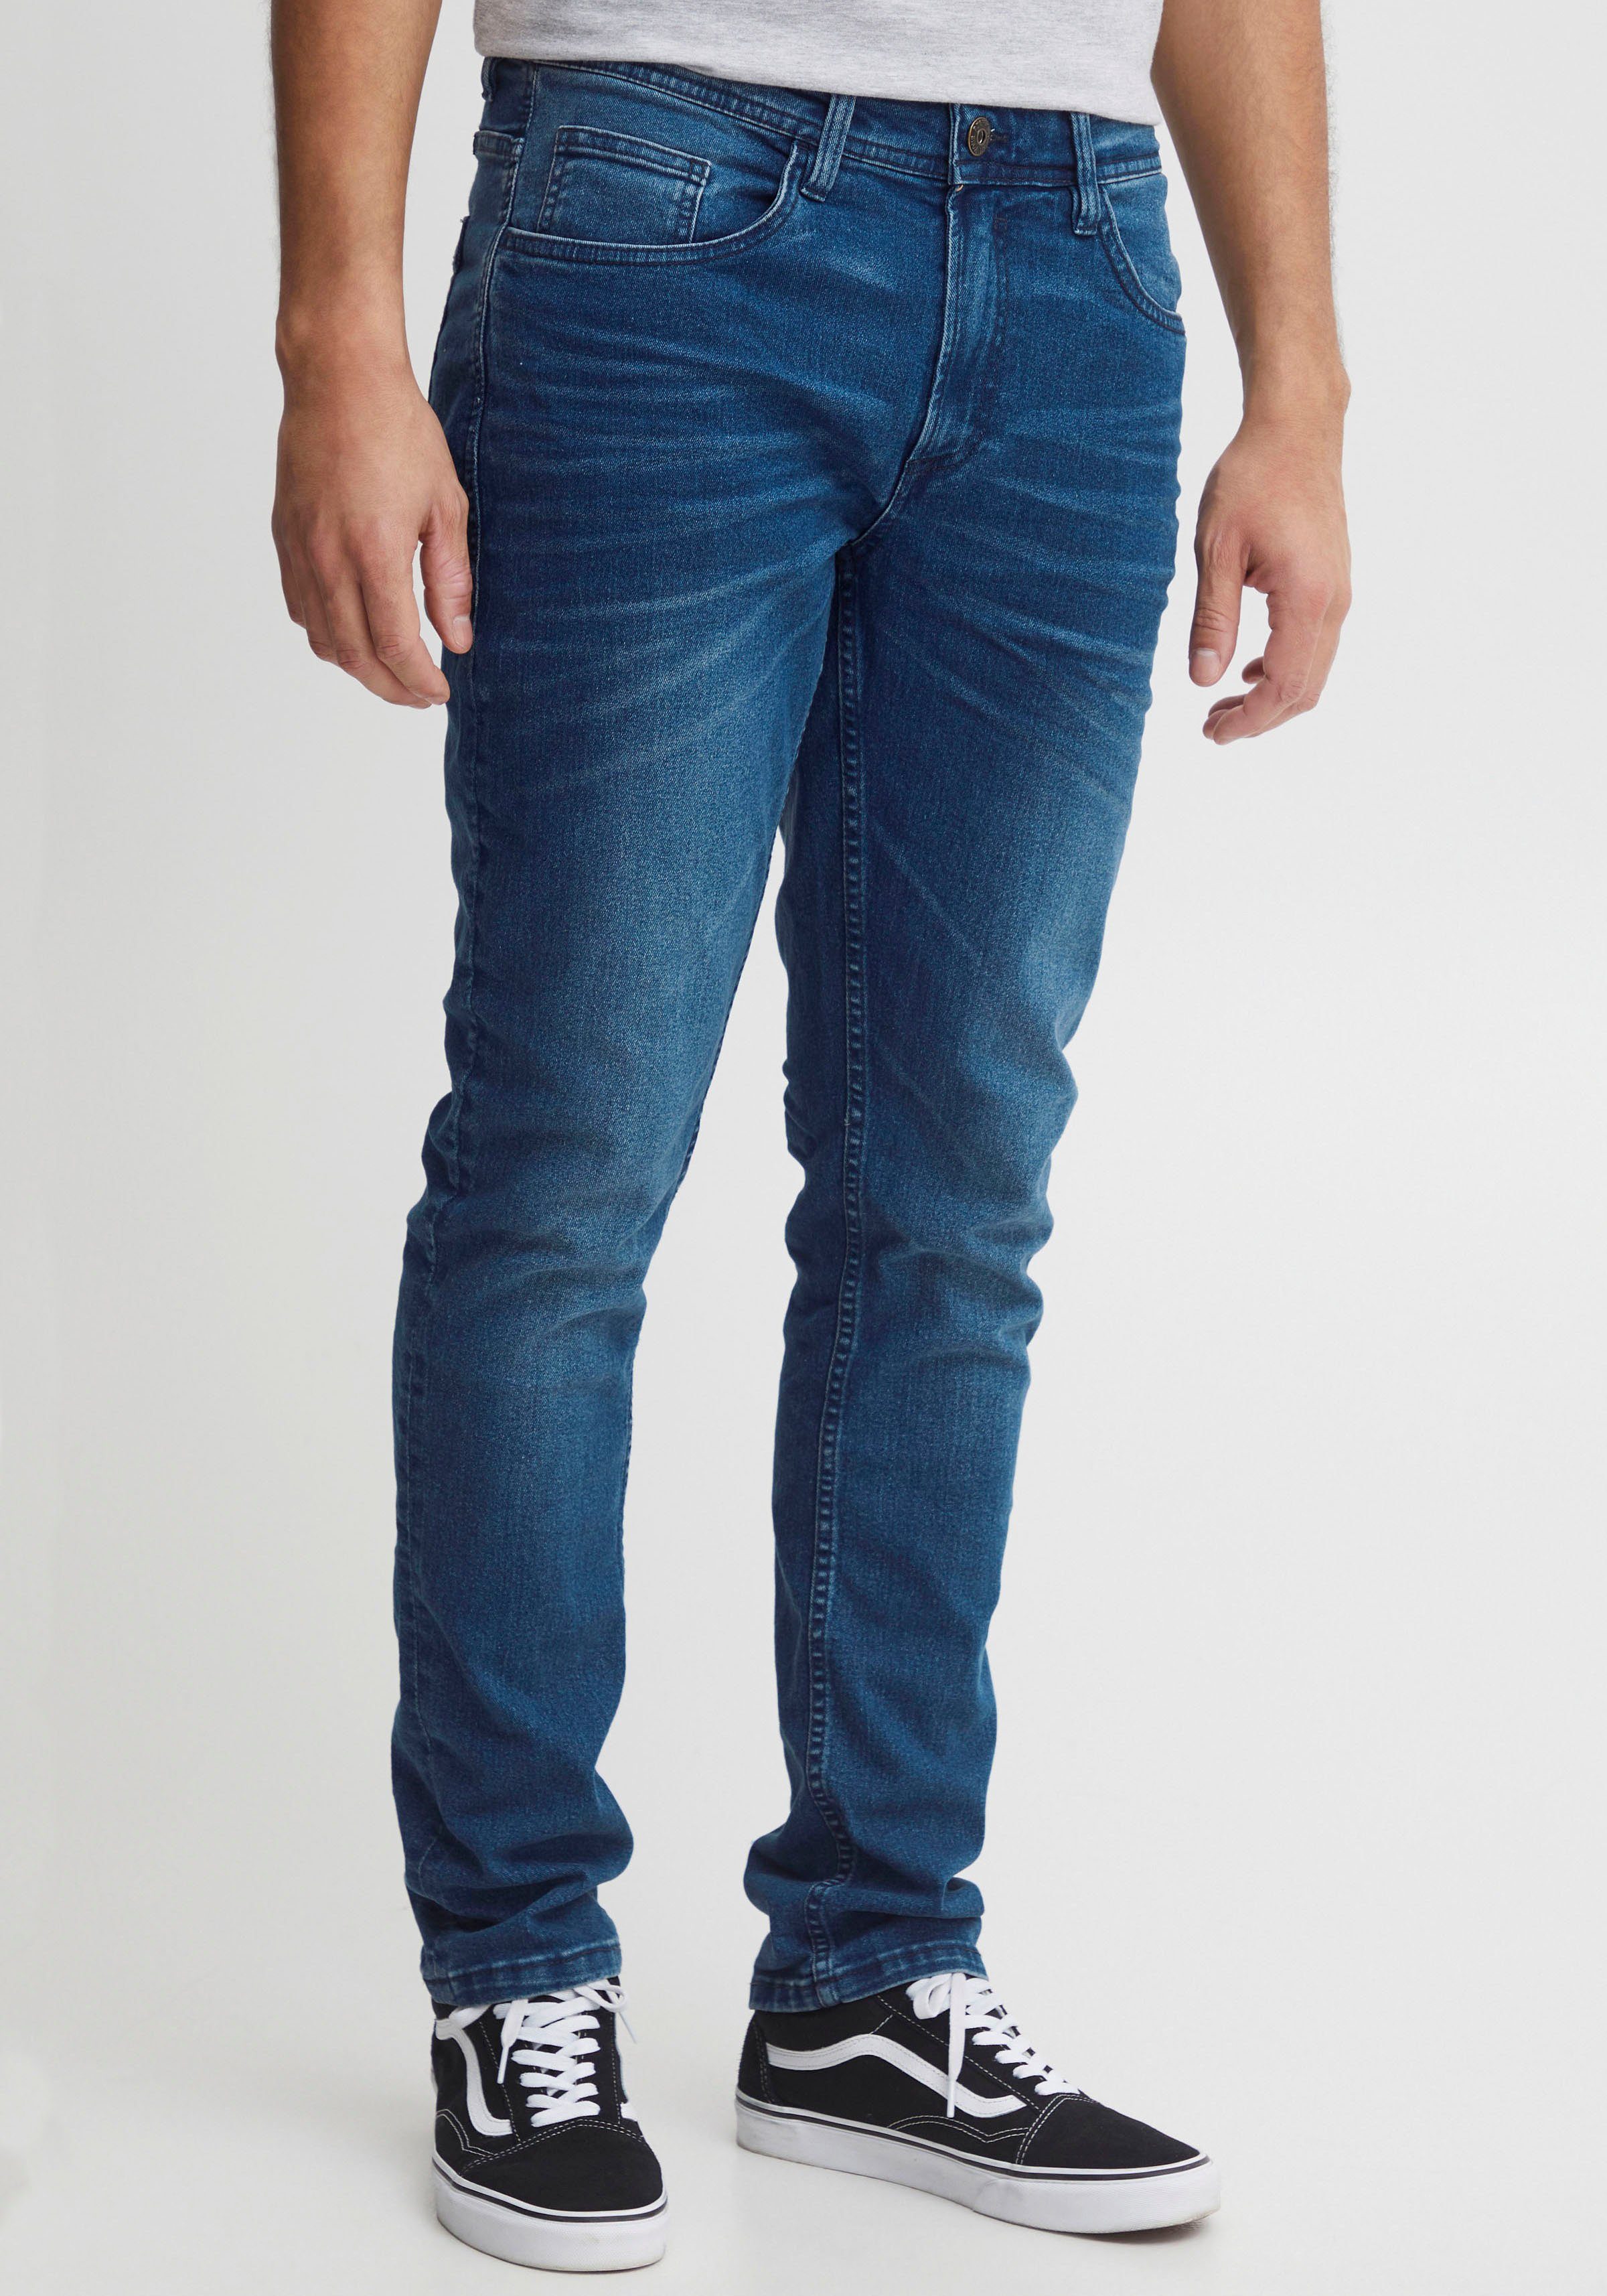 fit BL-Jeans Blend 5-Pocket-Jeans blue Twister medium